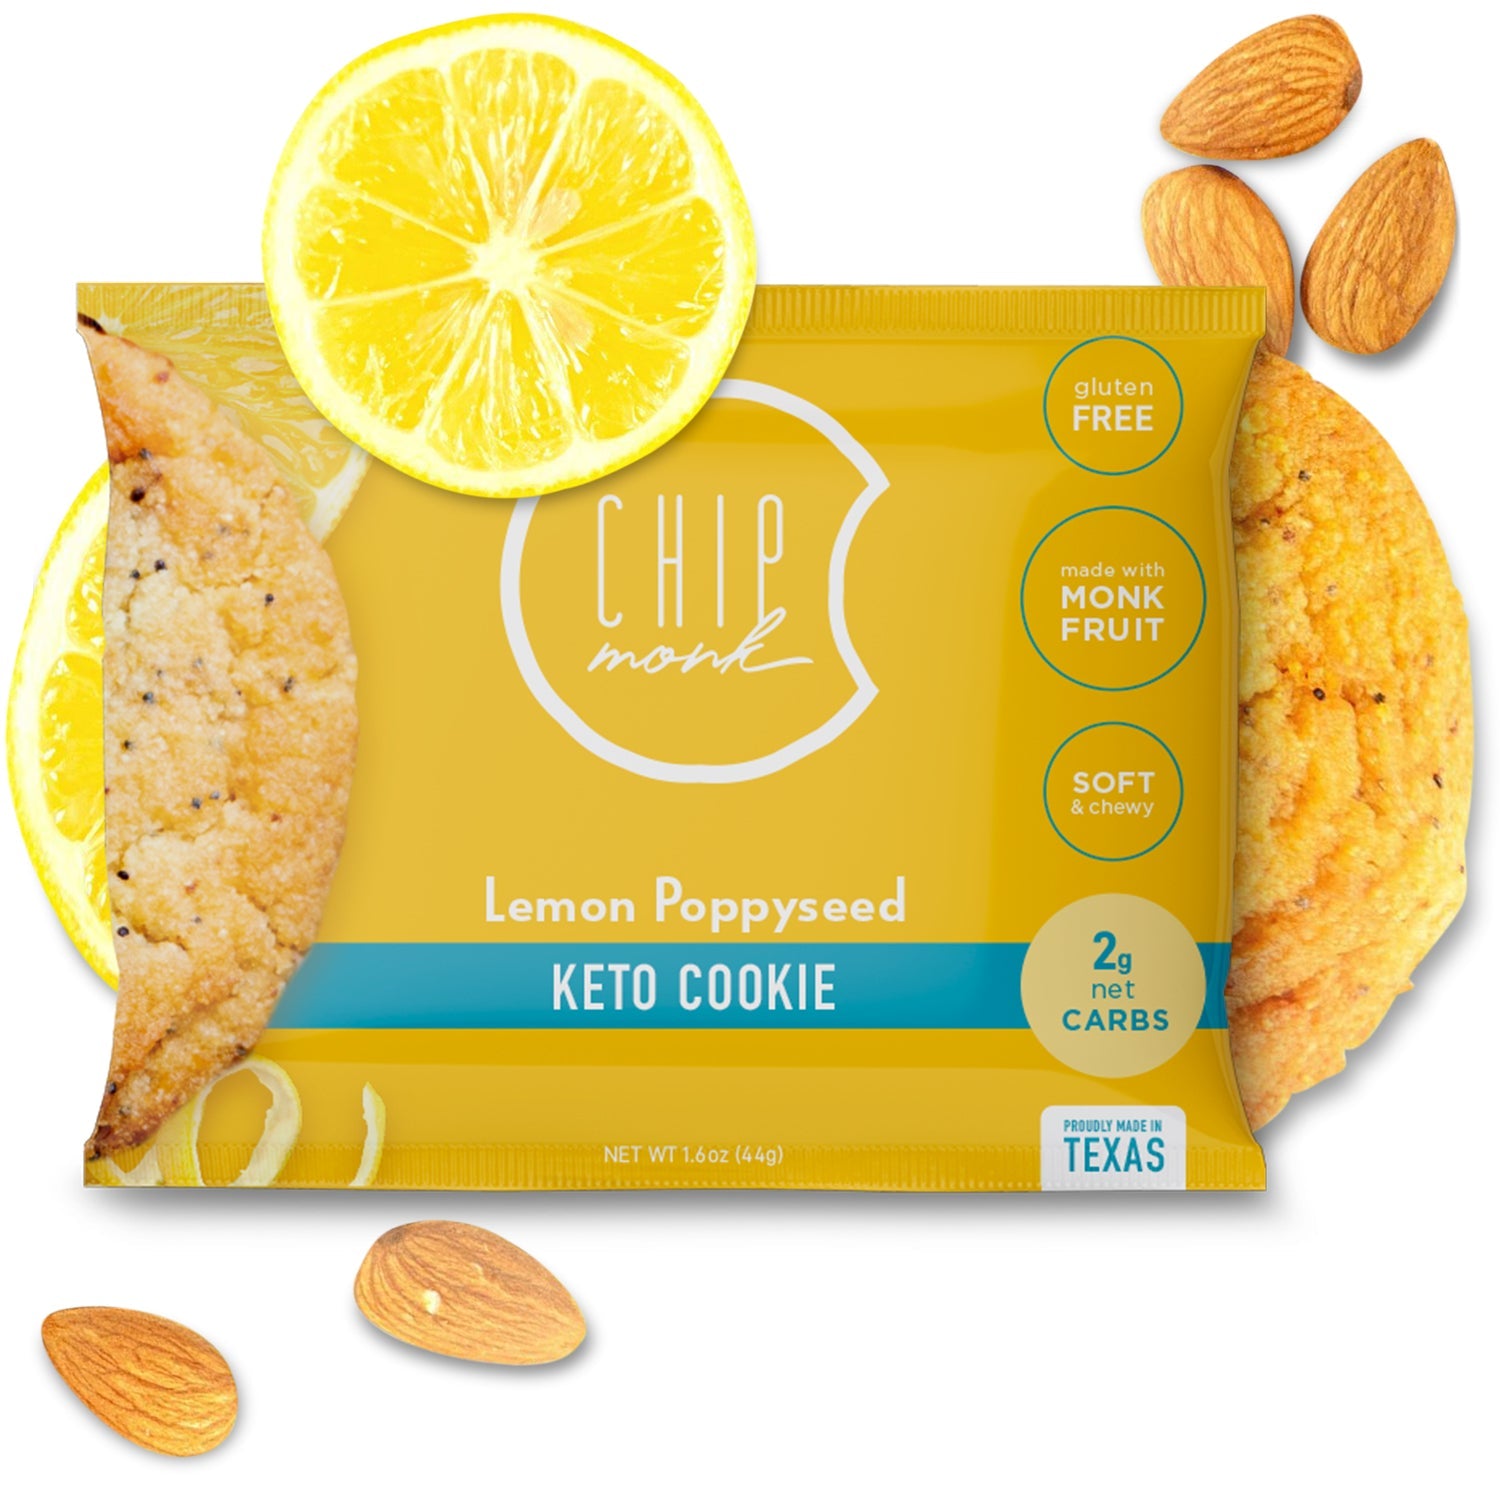 Keto Cookies Cookies CM Baking Lemon Poppyseed 6 Cookies 